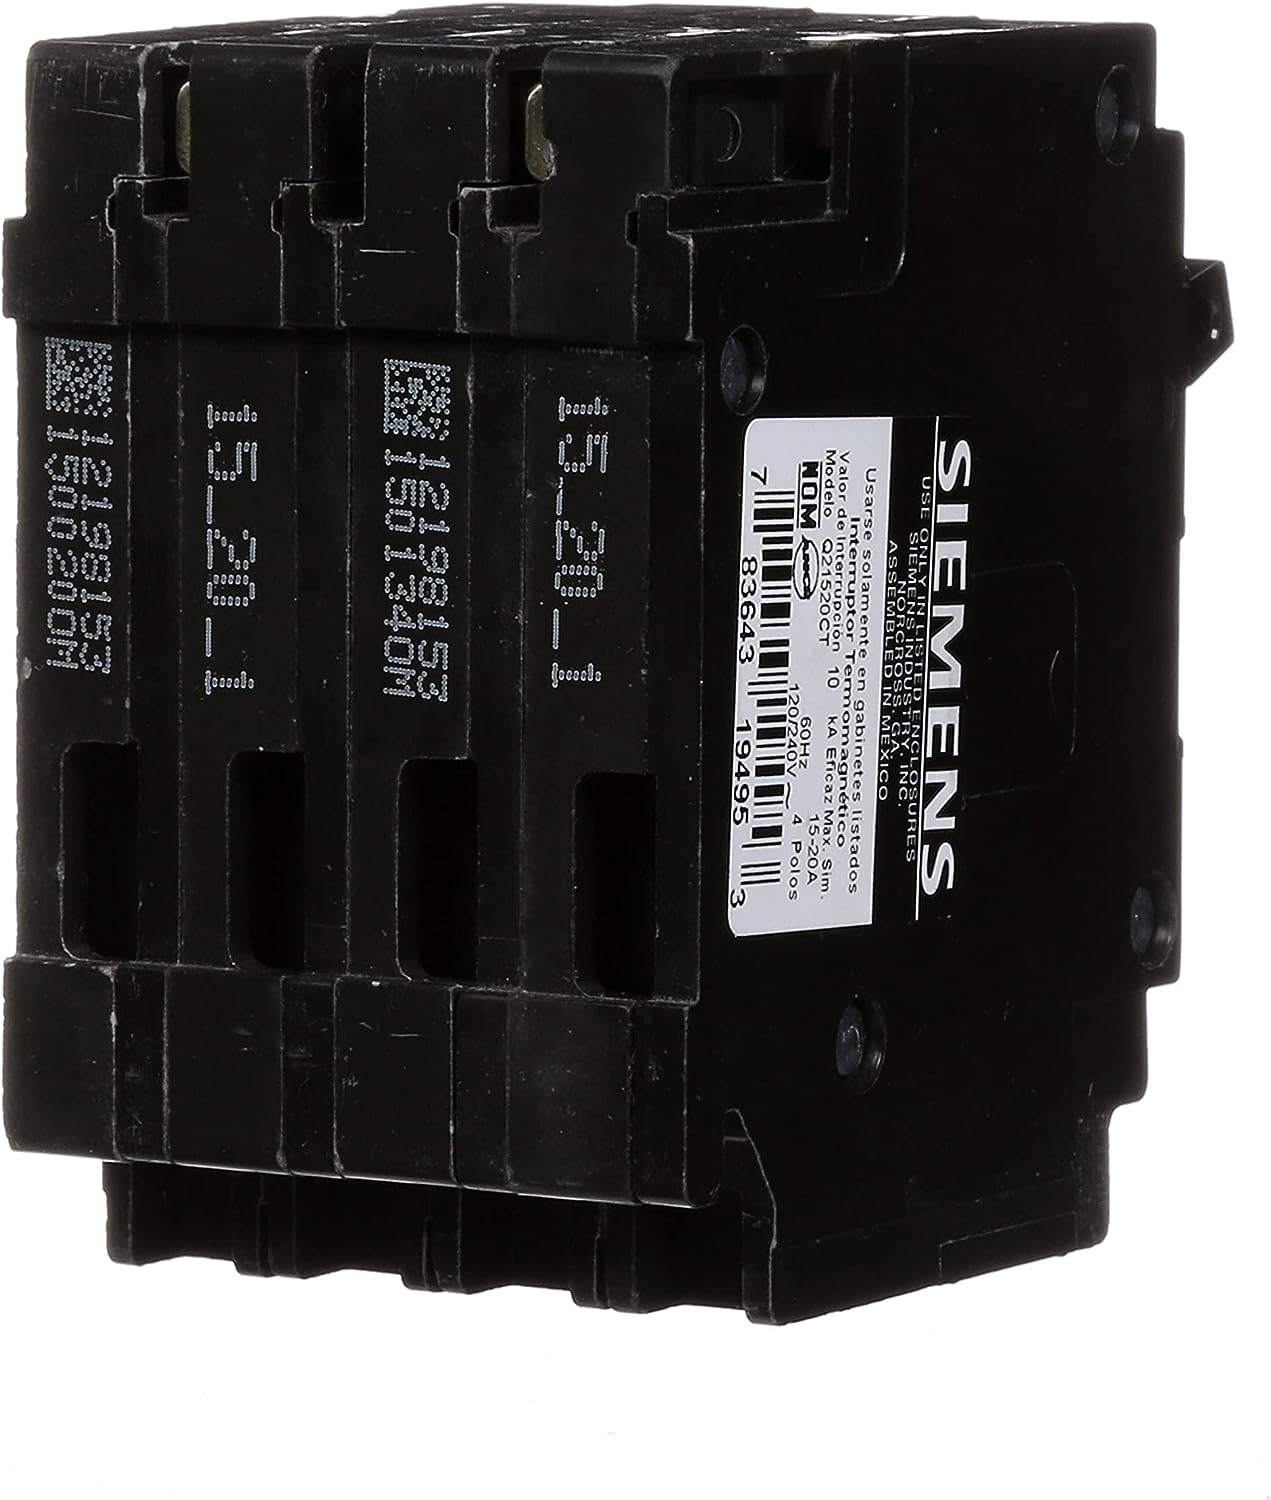 Q21520CT - Siemens - 20 Amp Quad Circuit Breaker